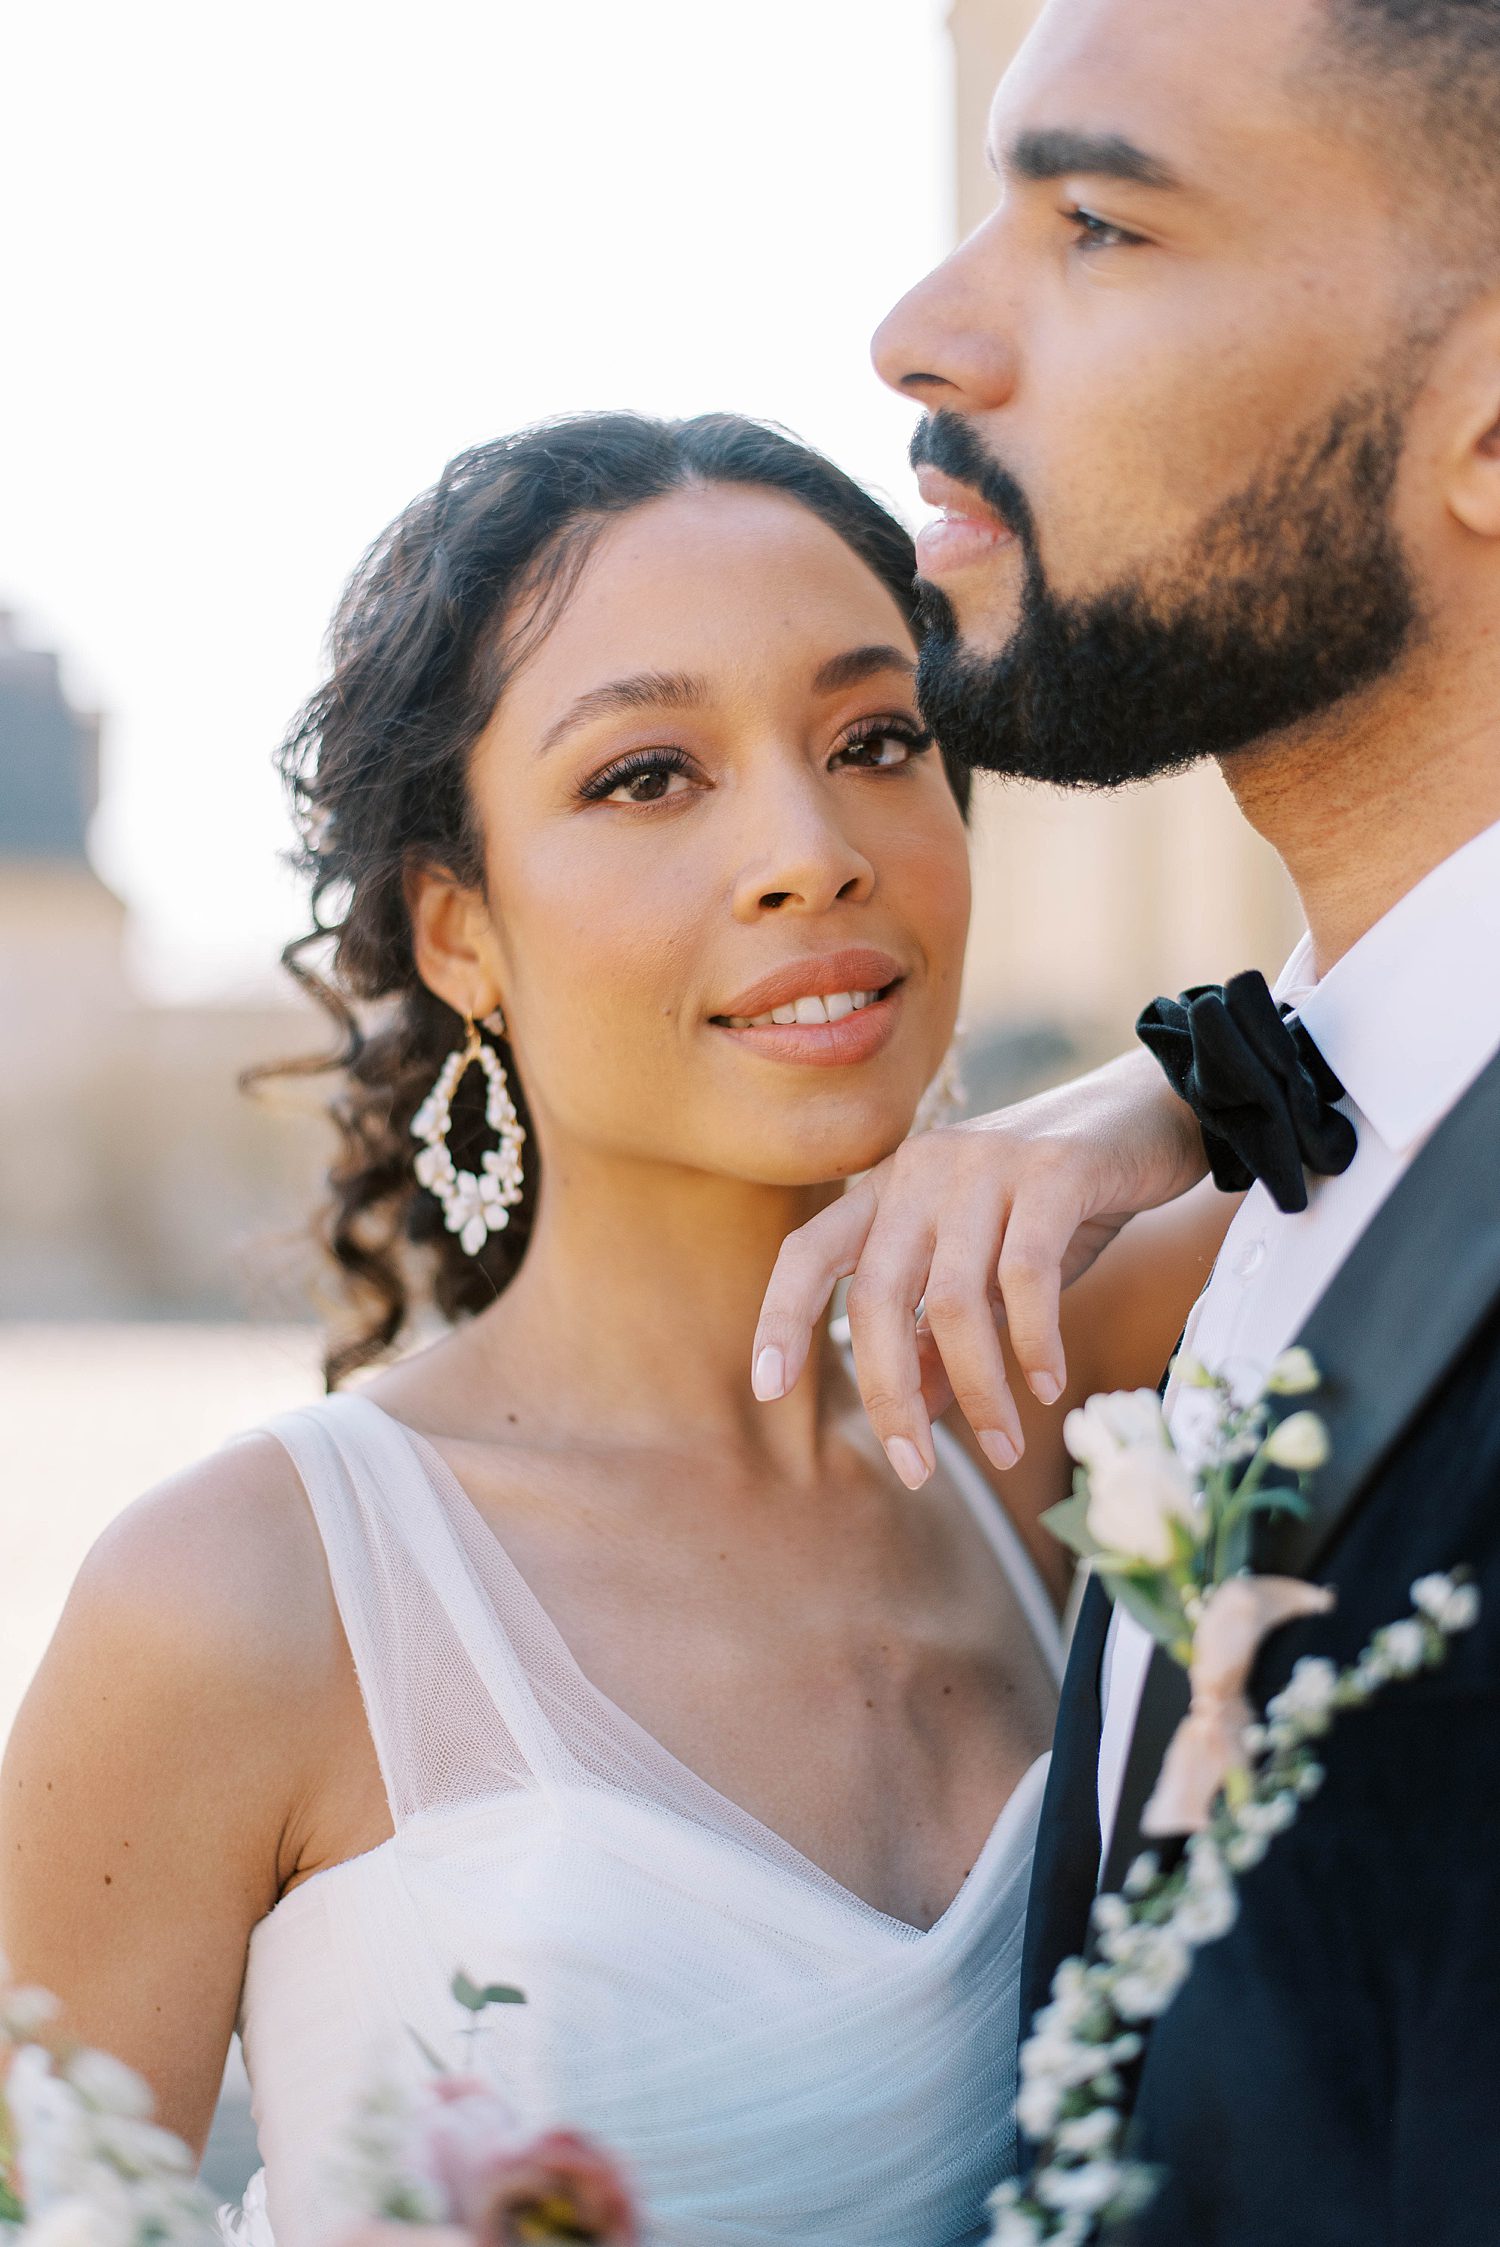 French bride leans against groom's shoulder smiling